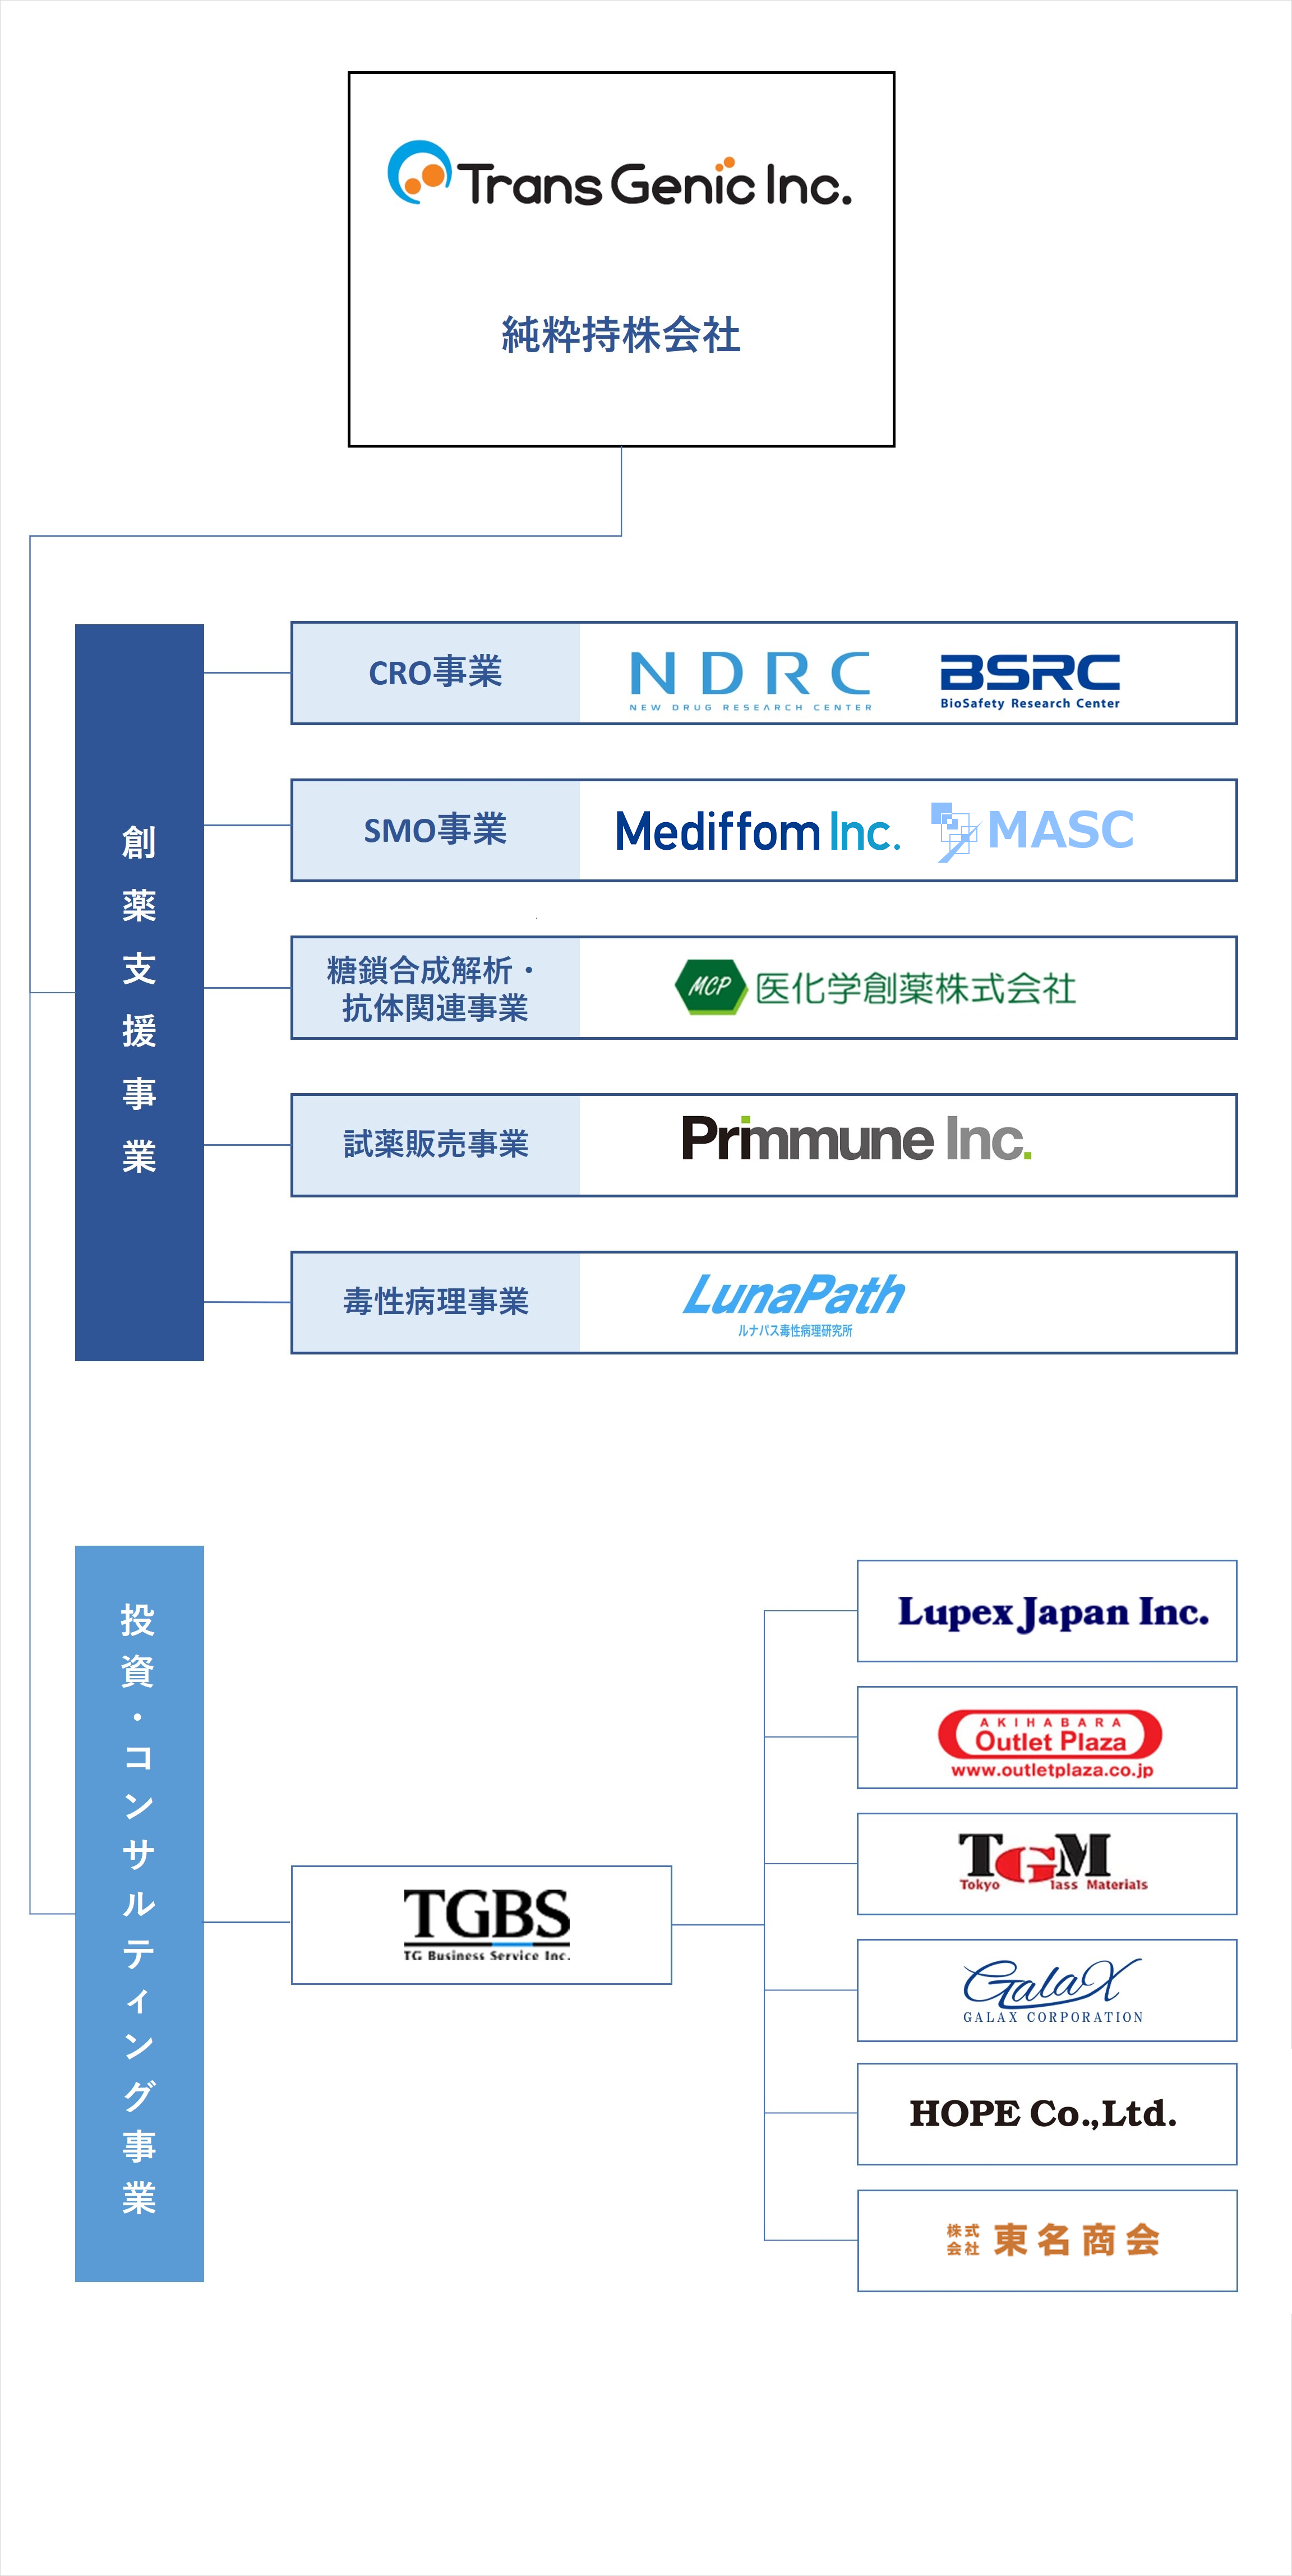 ジェノミクス事業：Trans Genic Indから、大きくバイオ事業と投資コンサル事業の2つに分かれている。バイオ事業...CRO事業：NDRC BSRK、SHO事業：Mediffom Inc、糖鎖合成解析事業：医化学創薬株式会社、試薬販売事業：Primmune Inc、投資コンサル事業...TG Business Service Inc、Tokyo Glass Materials、akihabara Outlet Plaza、Lupex Japan Inc.